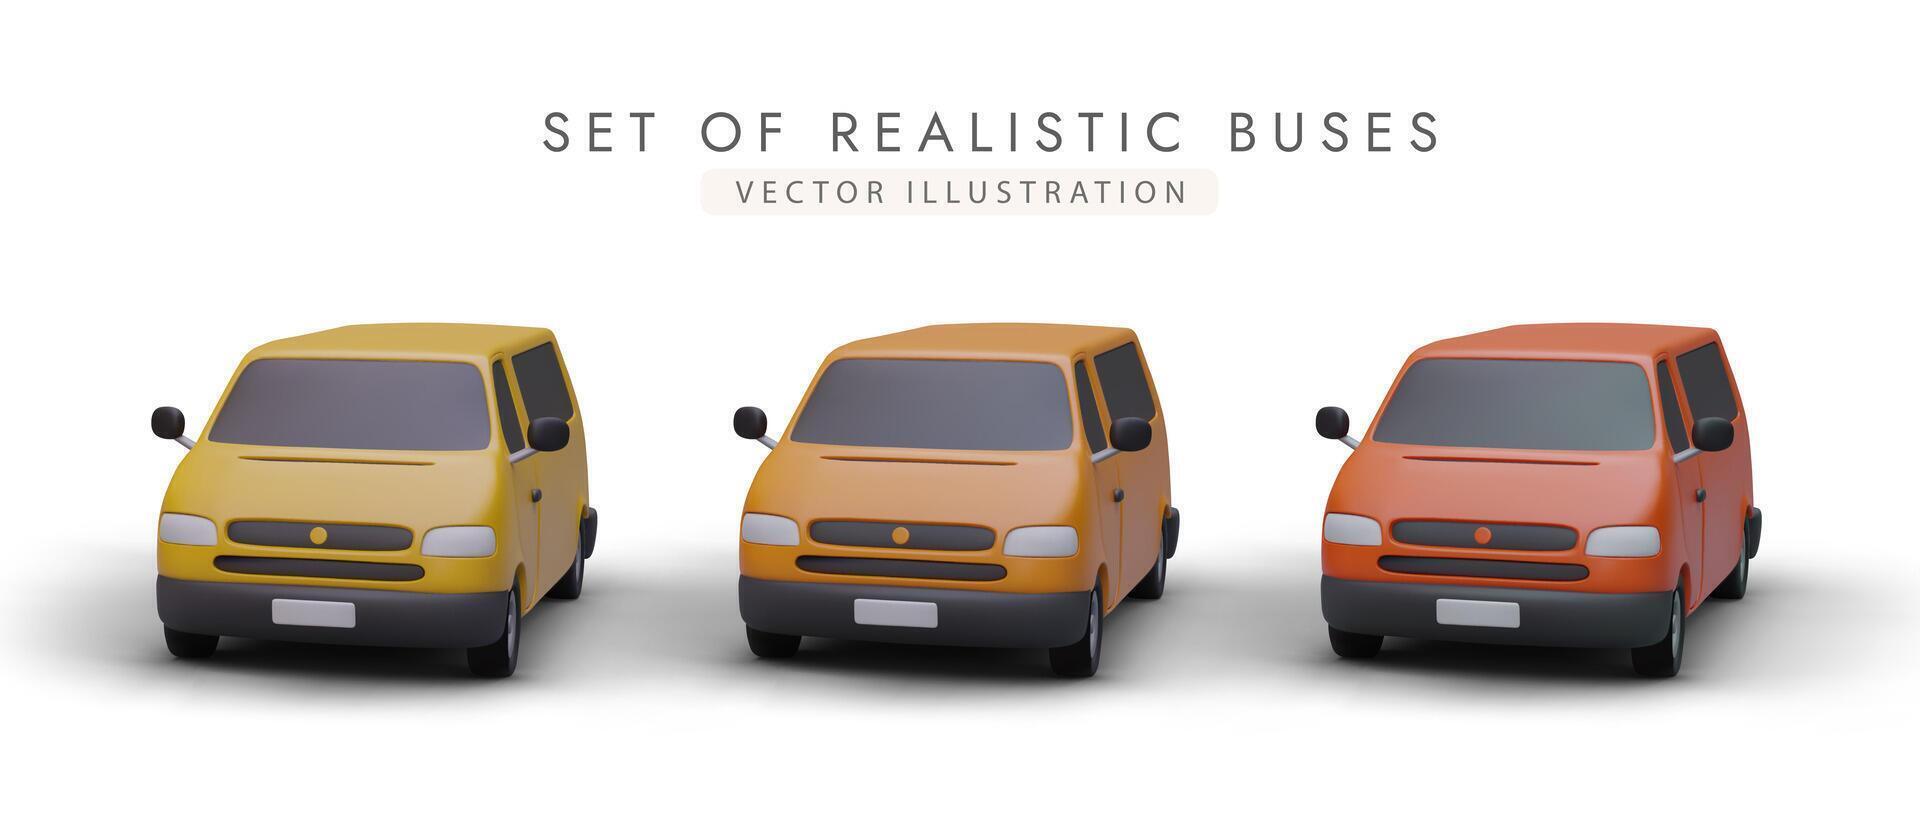 reeks van realistisch mini bussen in verschillend kleuren. minibusjes voor vervoeren groepen van mensen vector